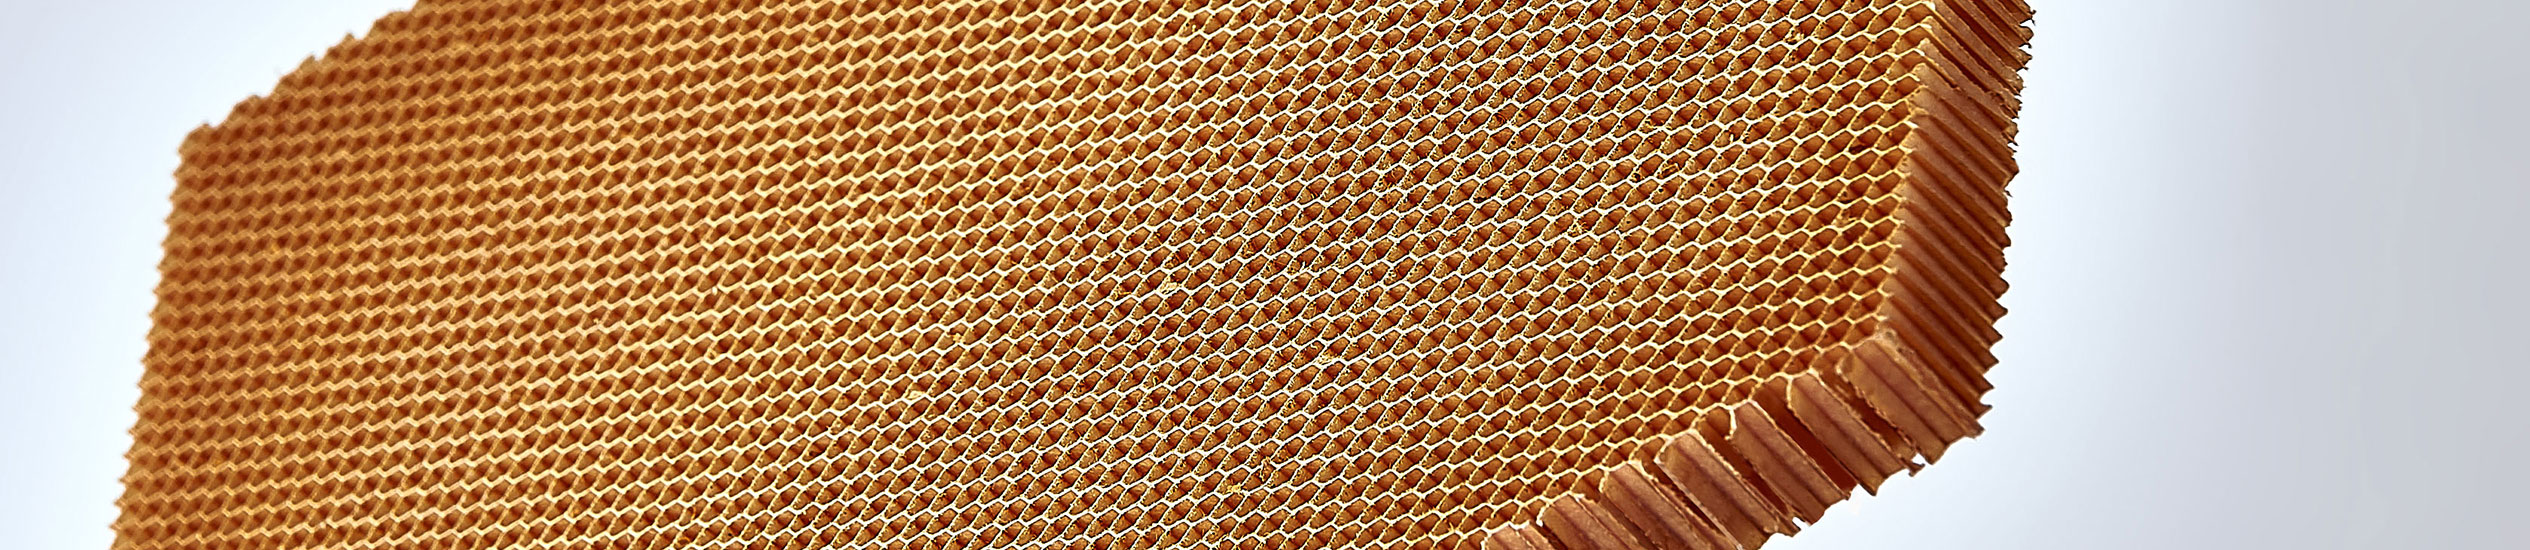 CEL propose une large gamme de matériaux d'âme : nid d'abeille en aluminium, thermoplastiques, papier aramide et mousses. Ces matériaux peuvent être utilisés